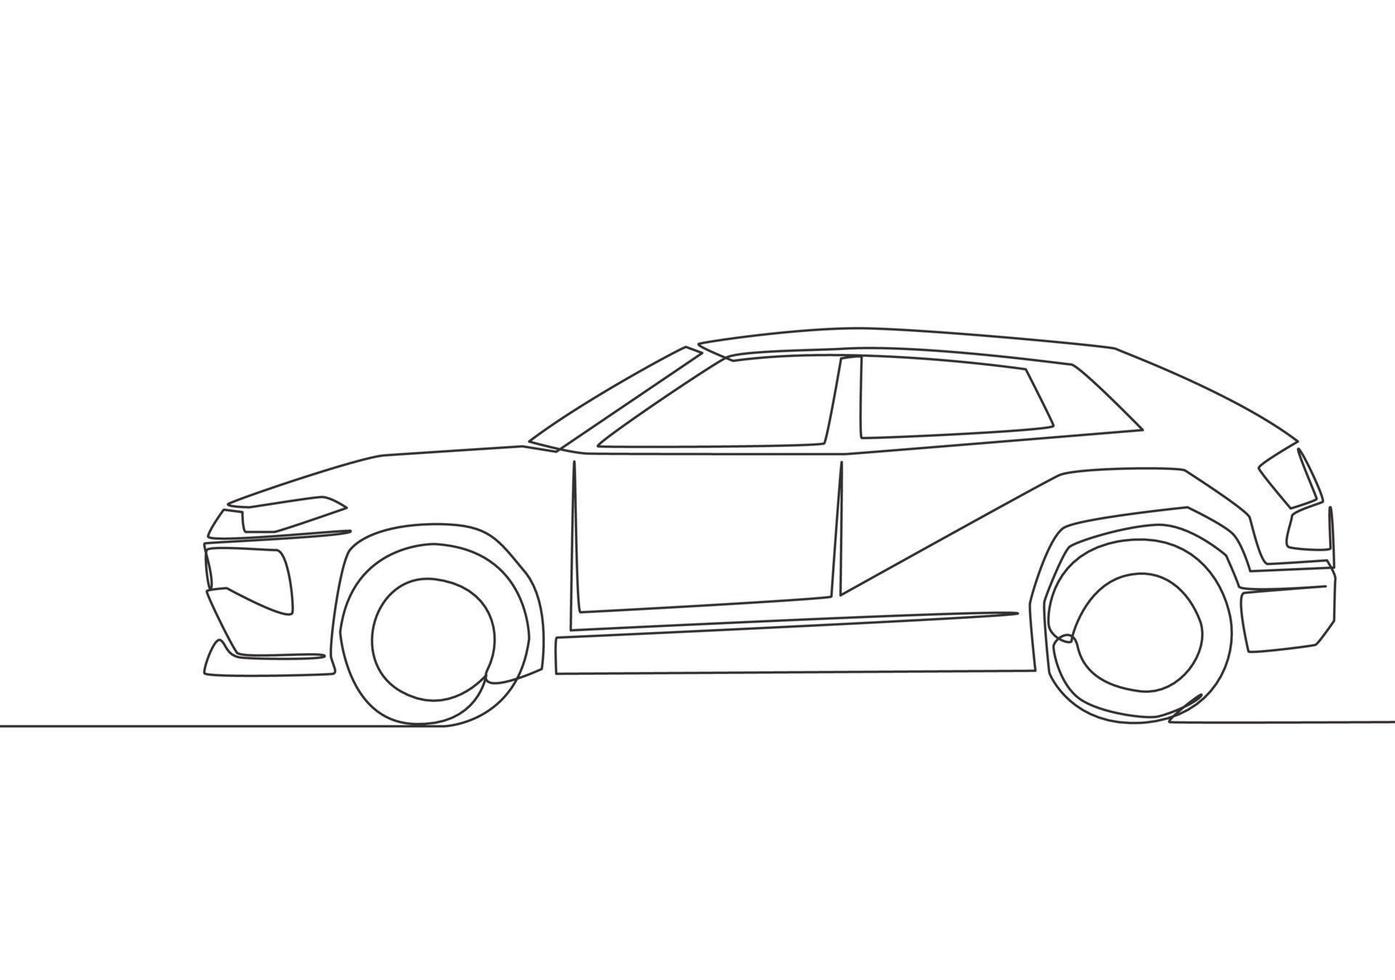 kontinuierlich Linie Zeichnung von zäh suv Wagen. städtisch Stadt Fahrzeug Transport Konzept. einer Single kontinuierlich Linie zeichnen Design vektor